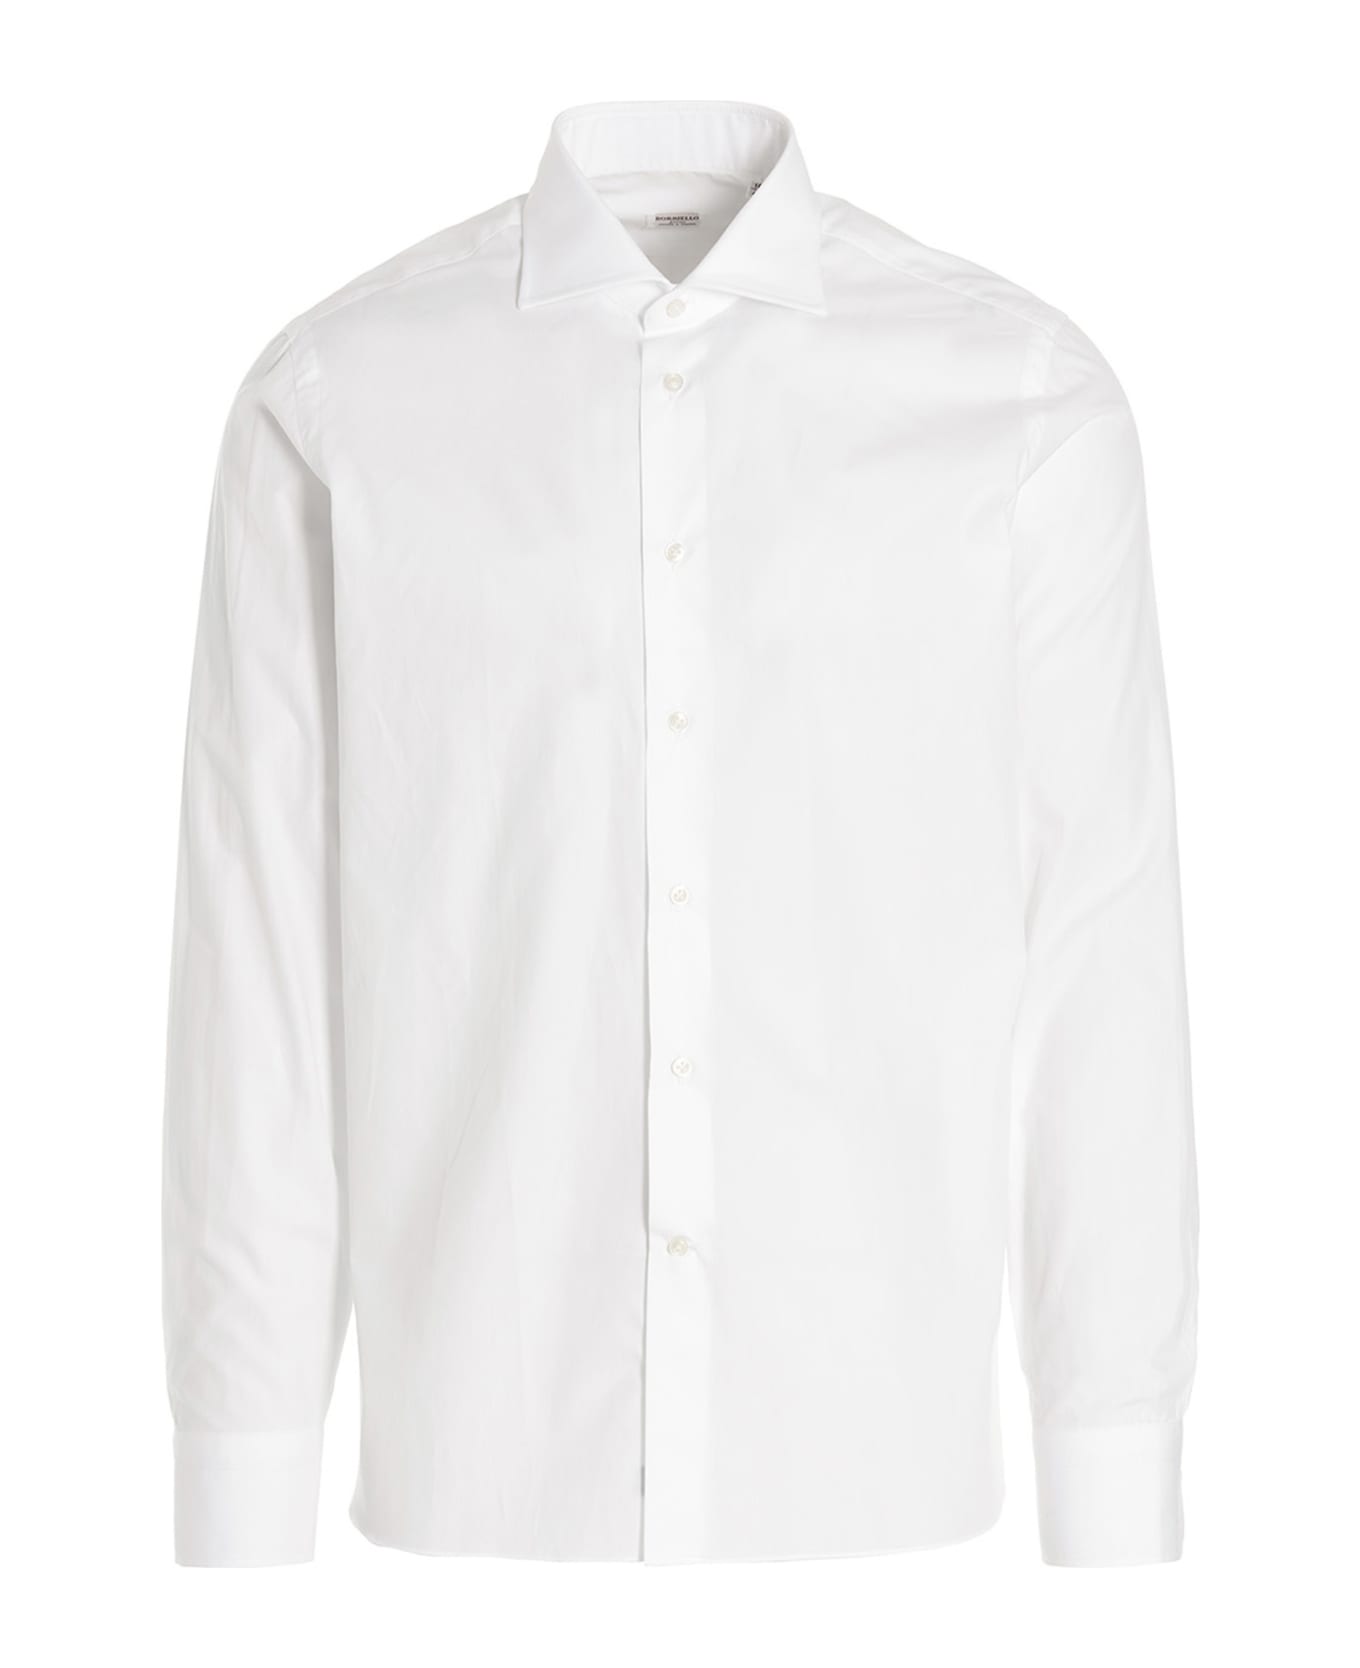 Borriello Napoli 'marechiaro' Shirt - White